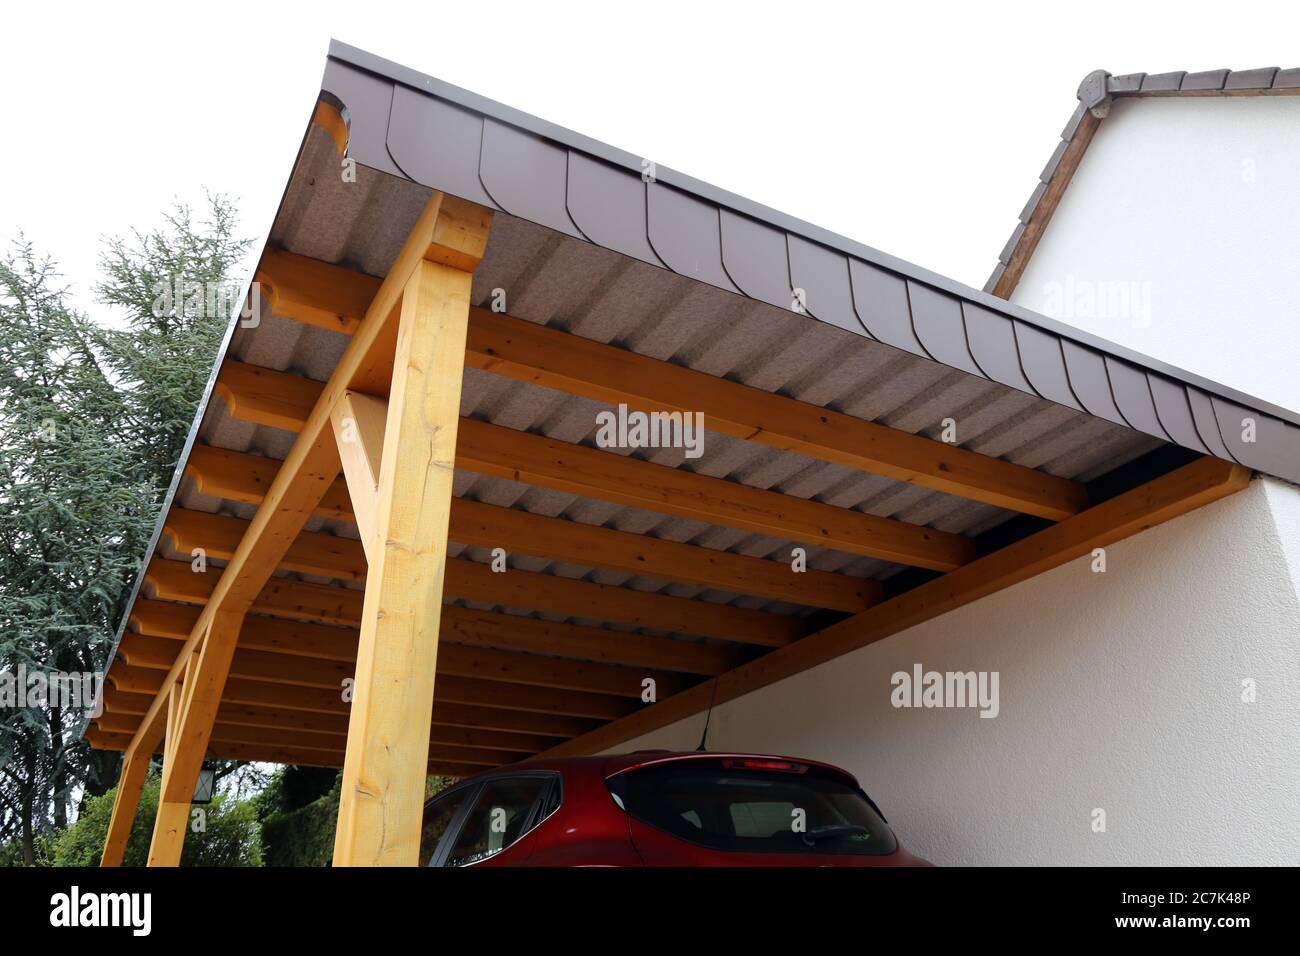 Carport moderno y de alta calidad hecho de madera Foto de stock